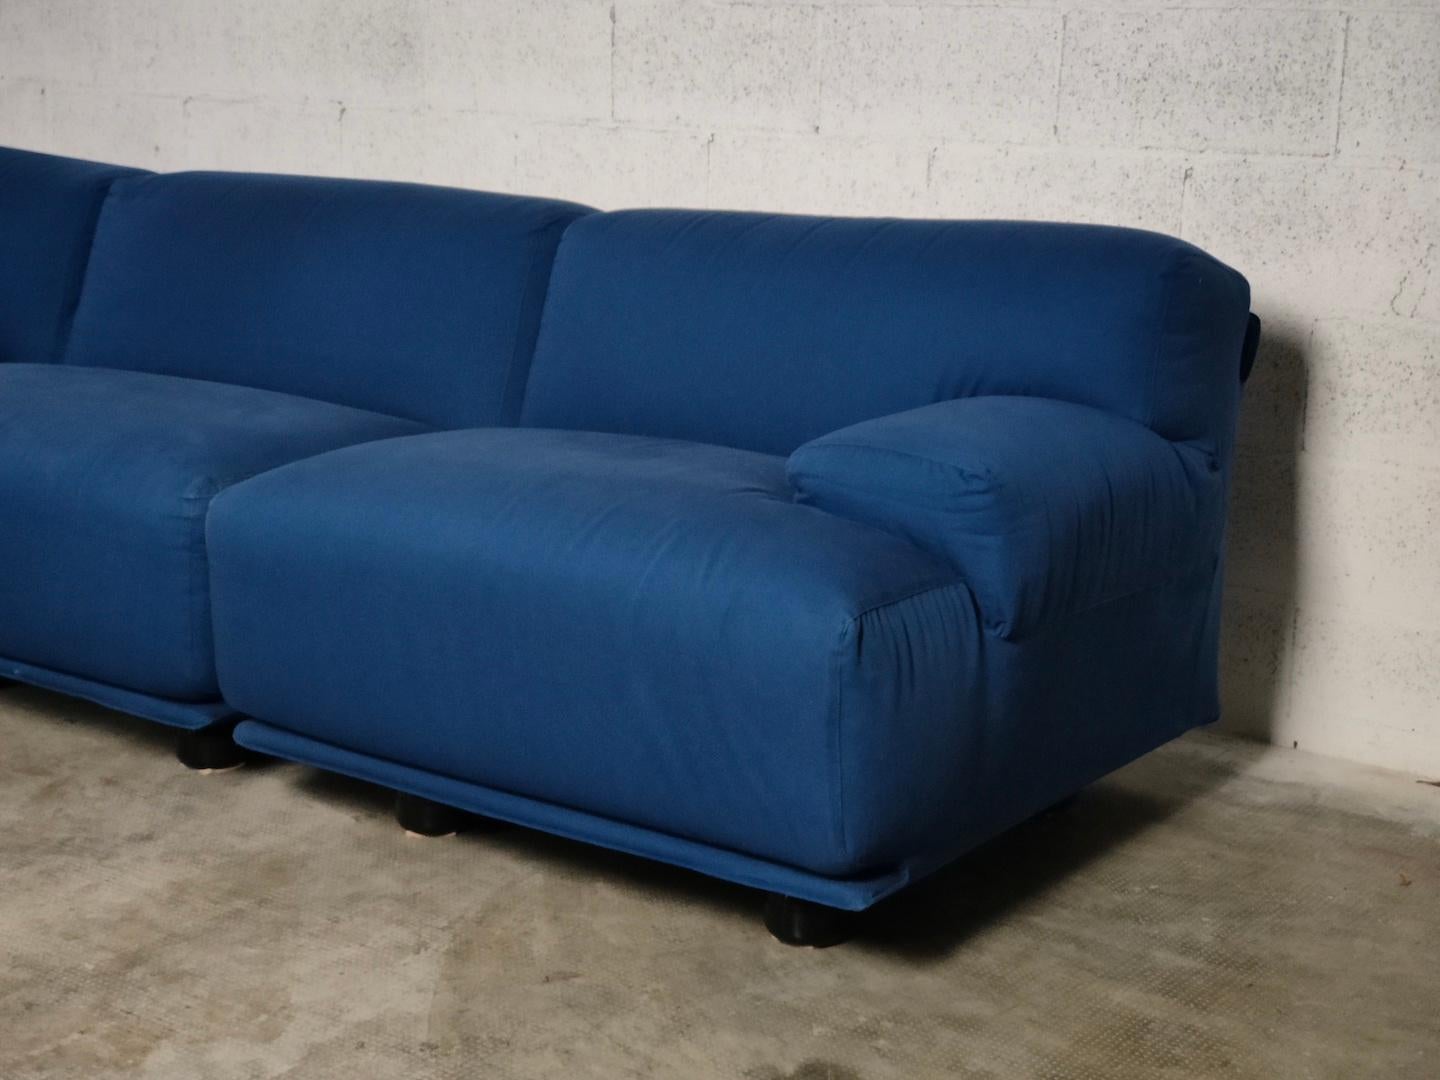 Fiandra modular sofa by Vico Magistretti for Cassina 70s For Sale 2